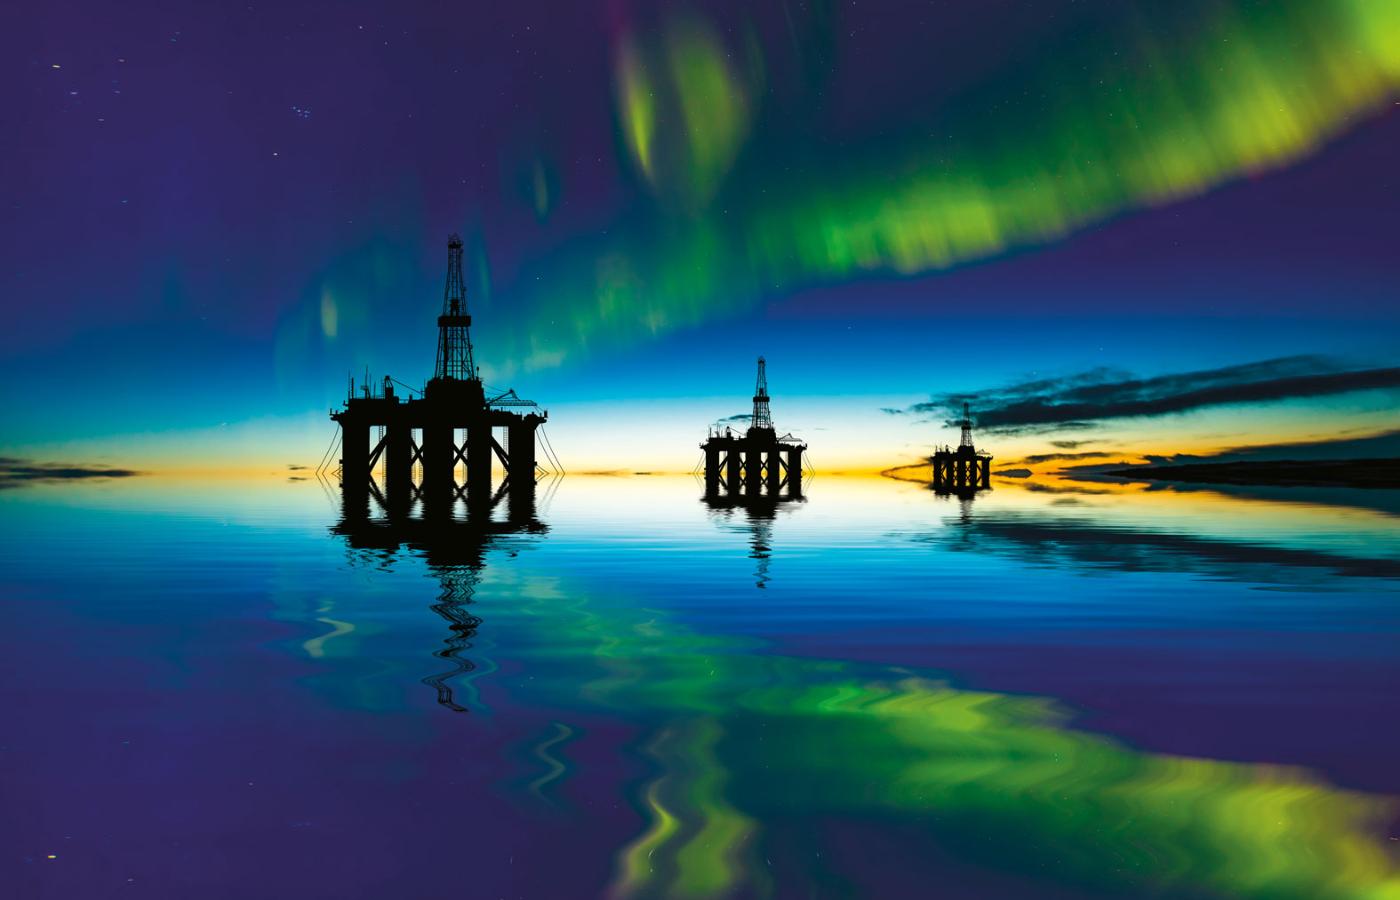 Platforma wiertnicza na Ekofisk, jednym z najstarszych złóż ropy naftowej w norweskiej części Morza Północnego, na tle zorzy polarnej.